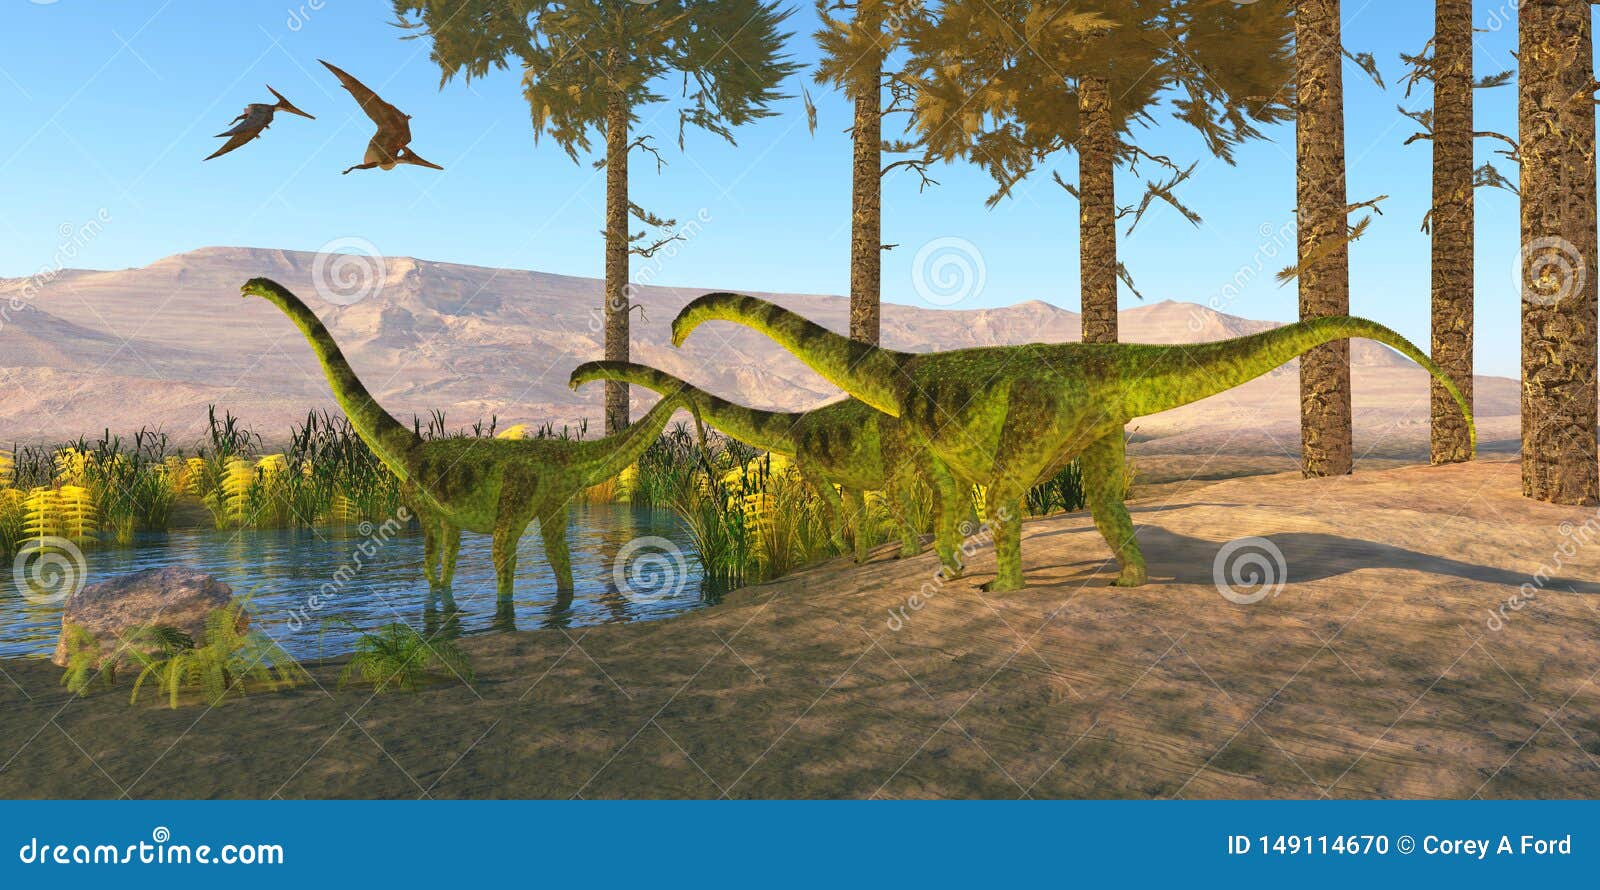 cretaceous puertasaurus dinosaurs